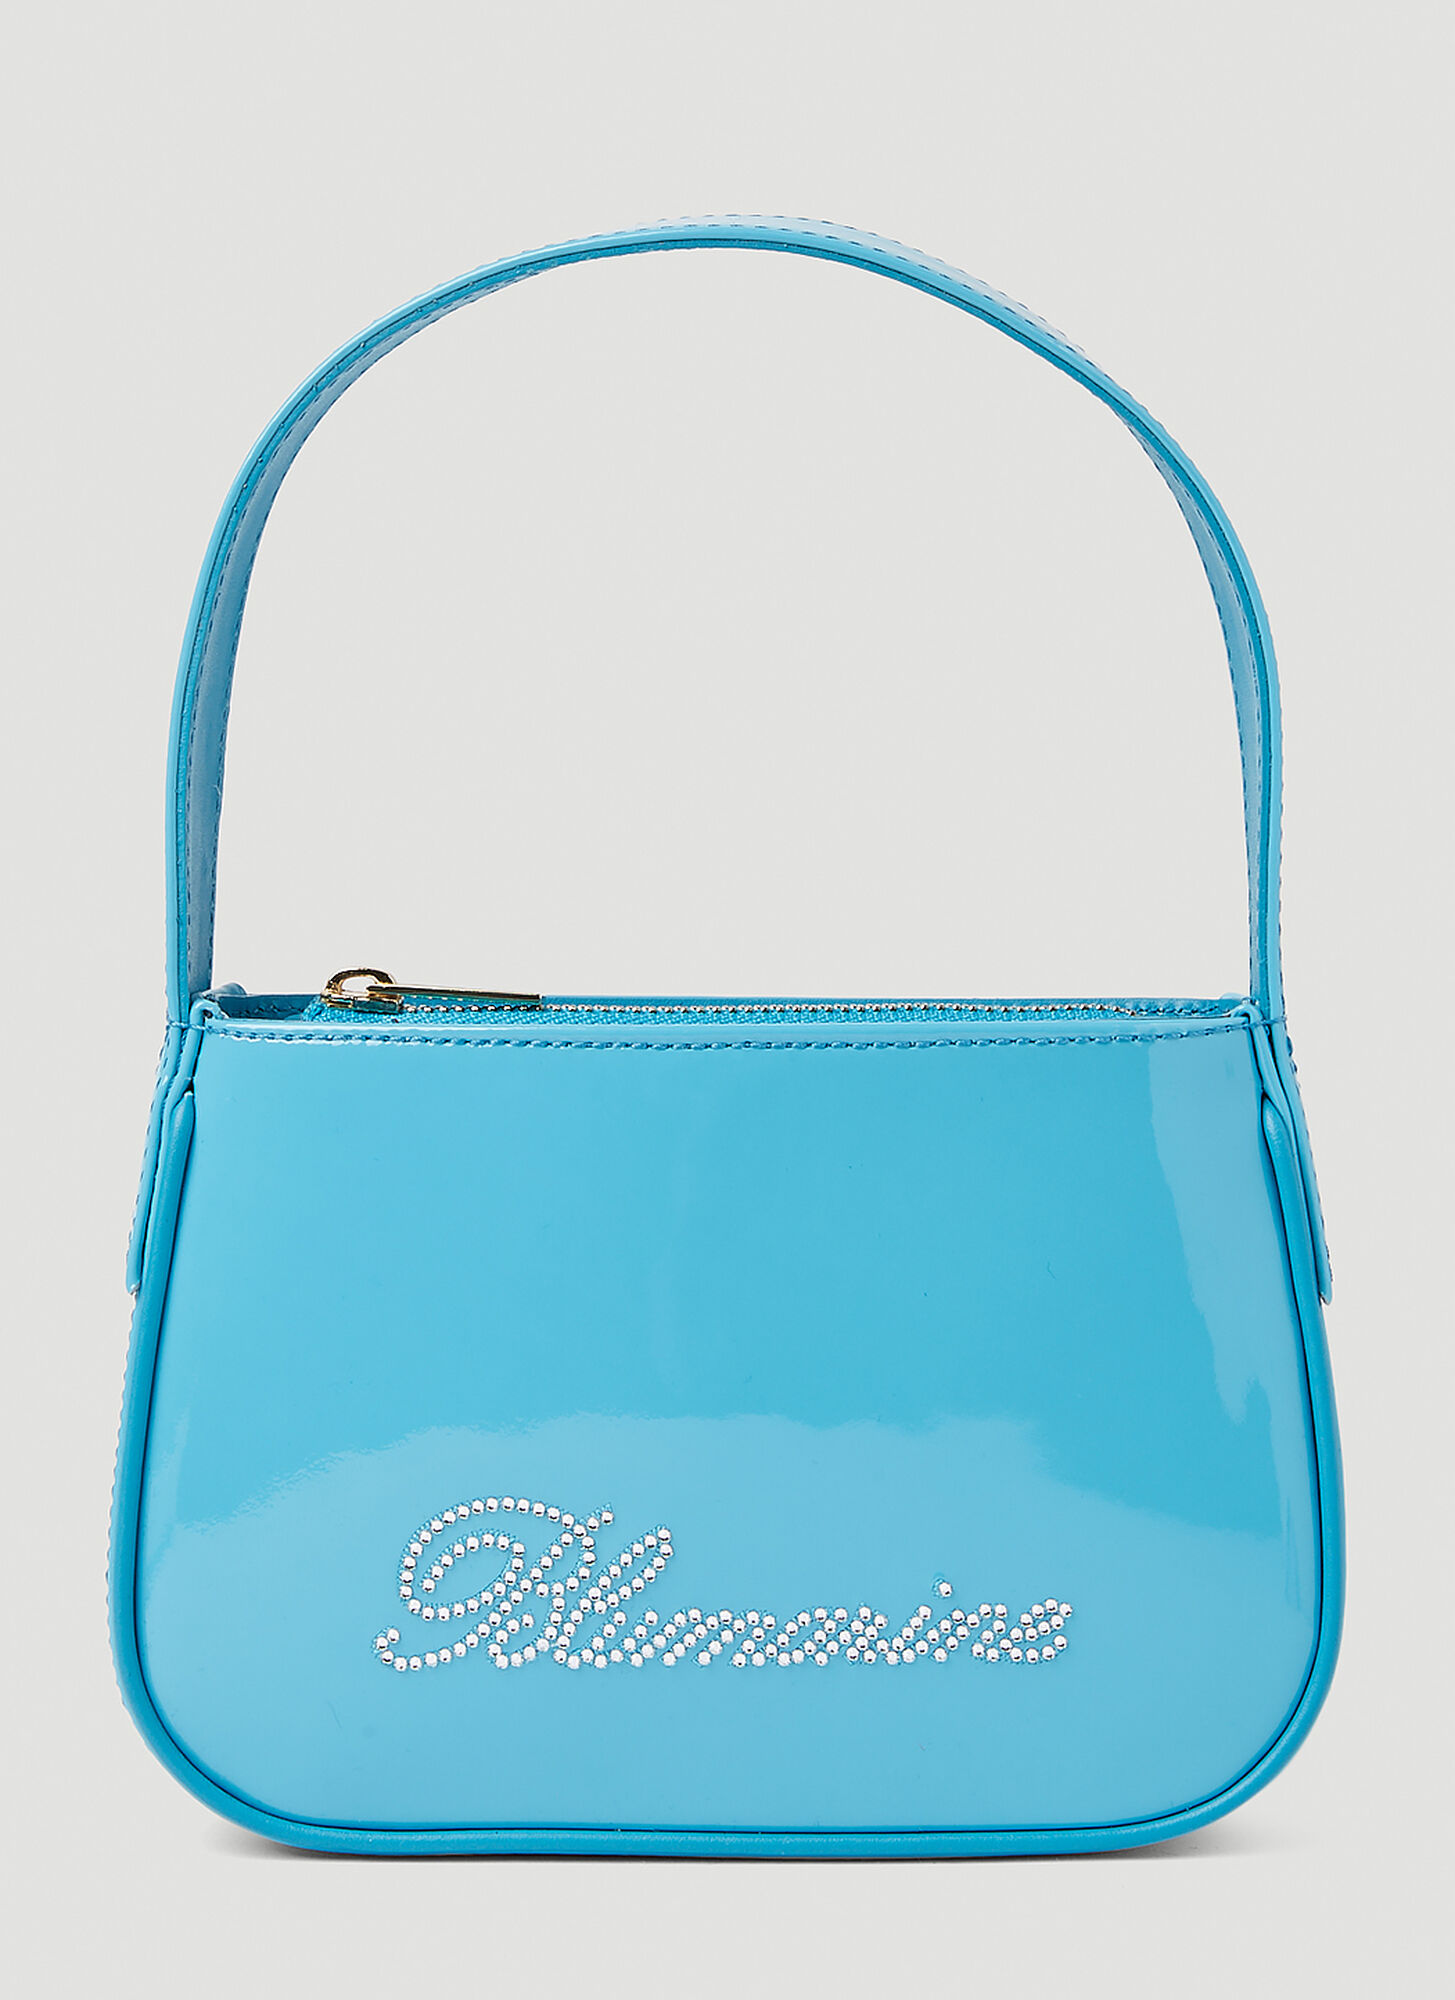 Blumarine Logo Patent Leather Shoulder Bag In Light Blue